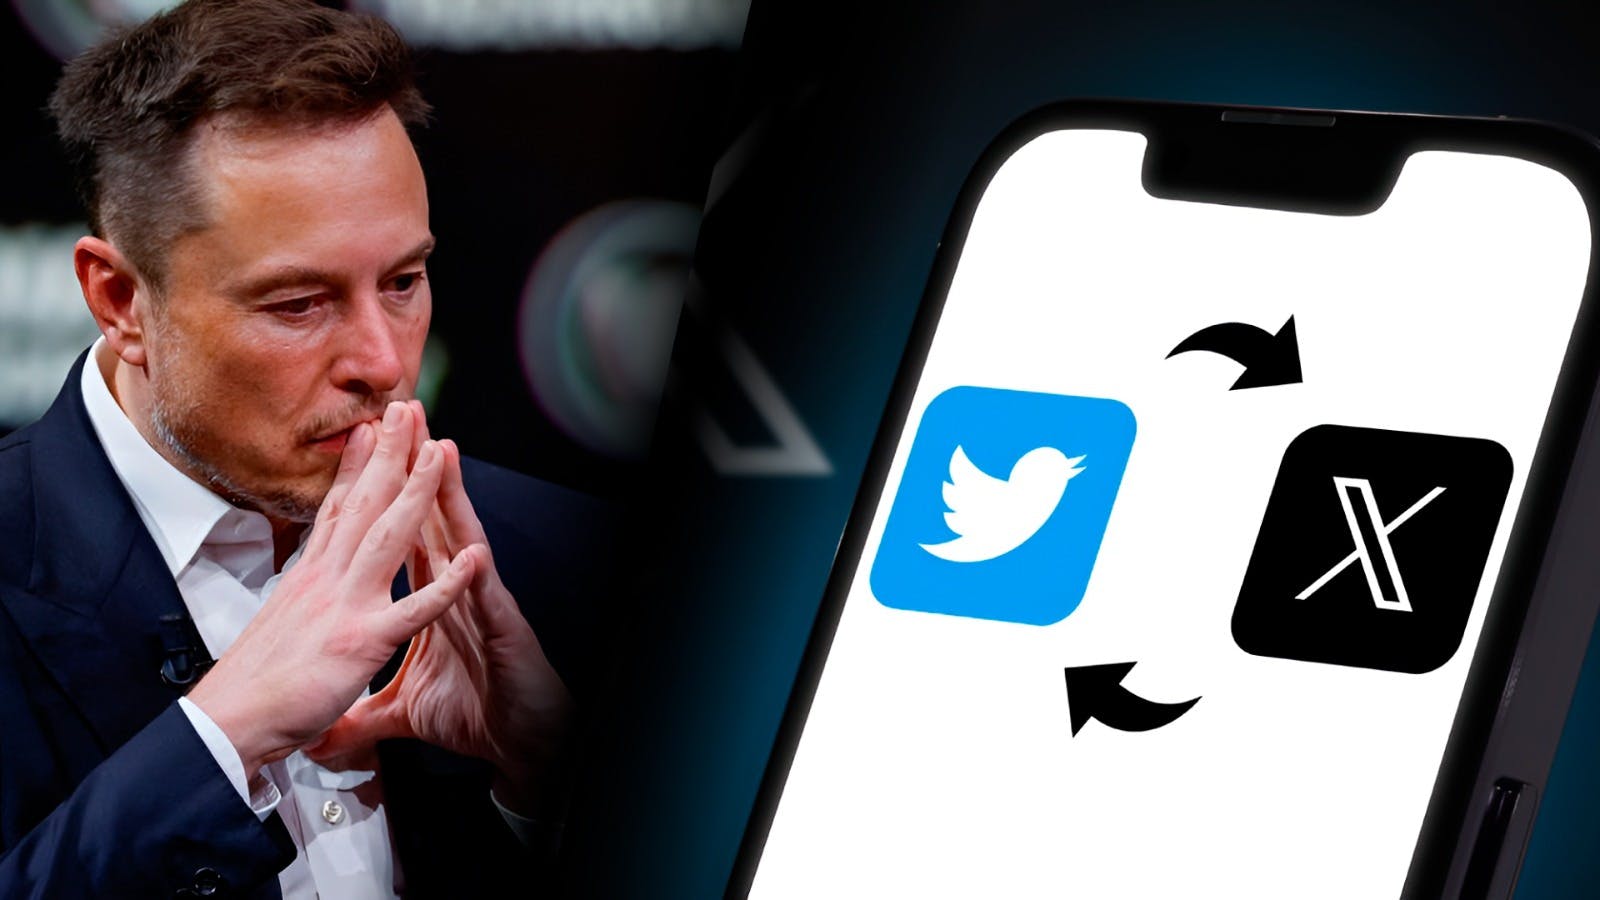 El cambio de Twitter a “X”: los problemas legales para Elon Musk